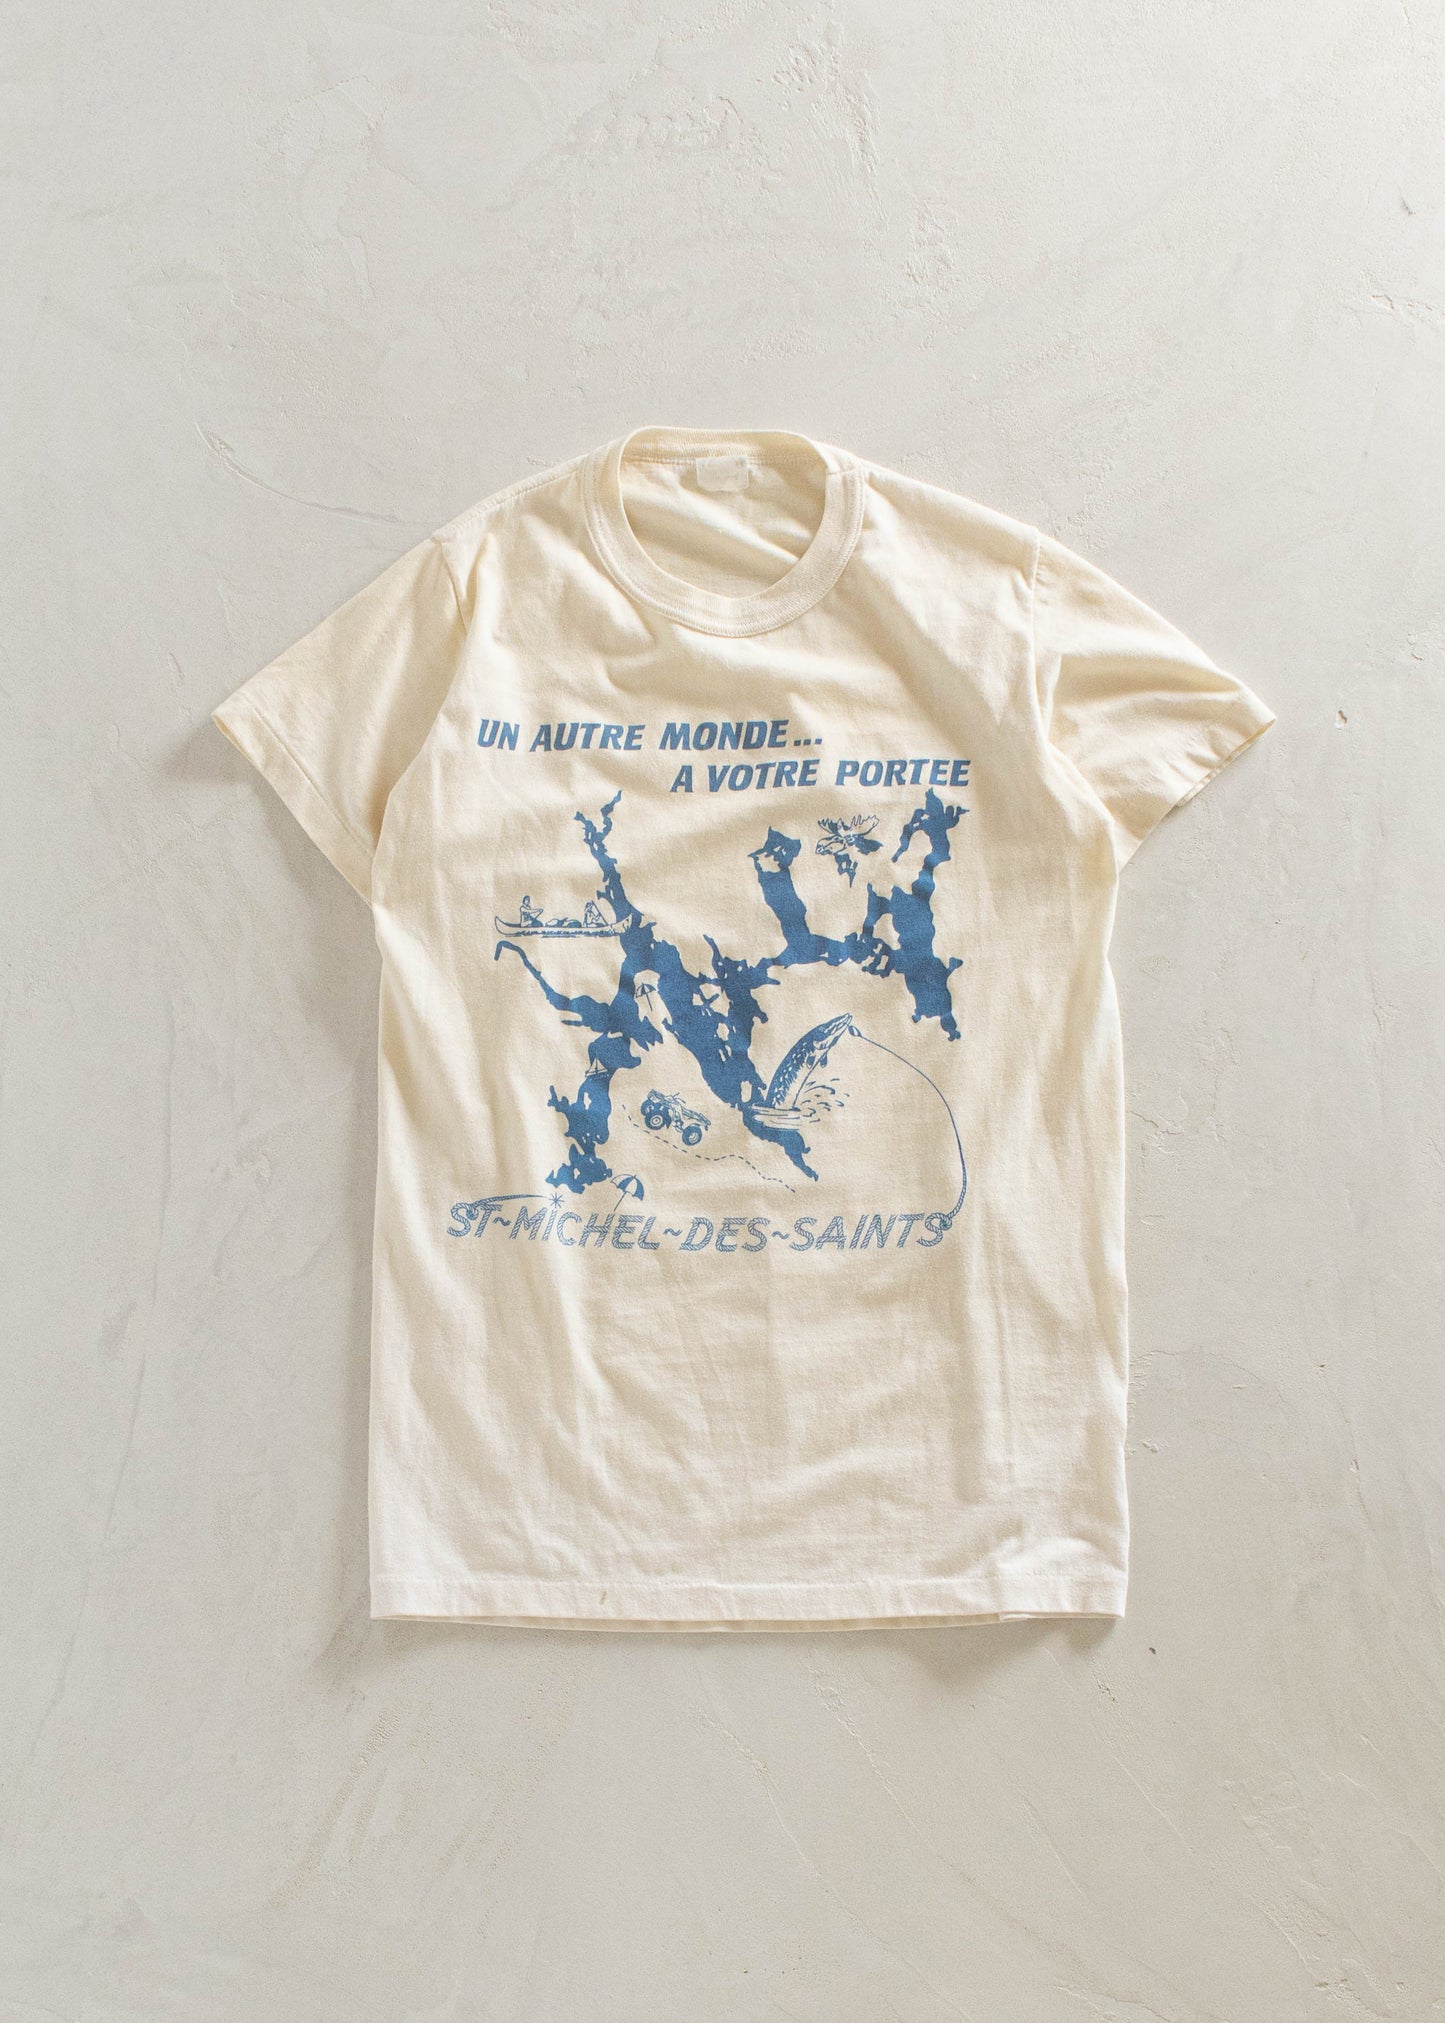 1980s St-Michel-Des-Saints Souvenir T-Shirt Size S/M